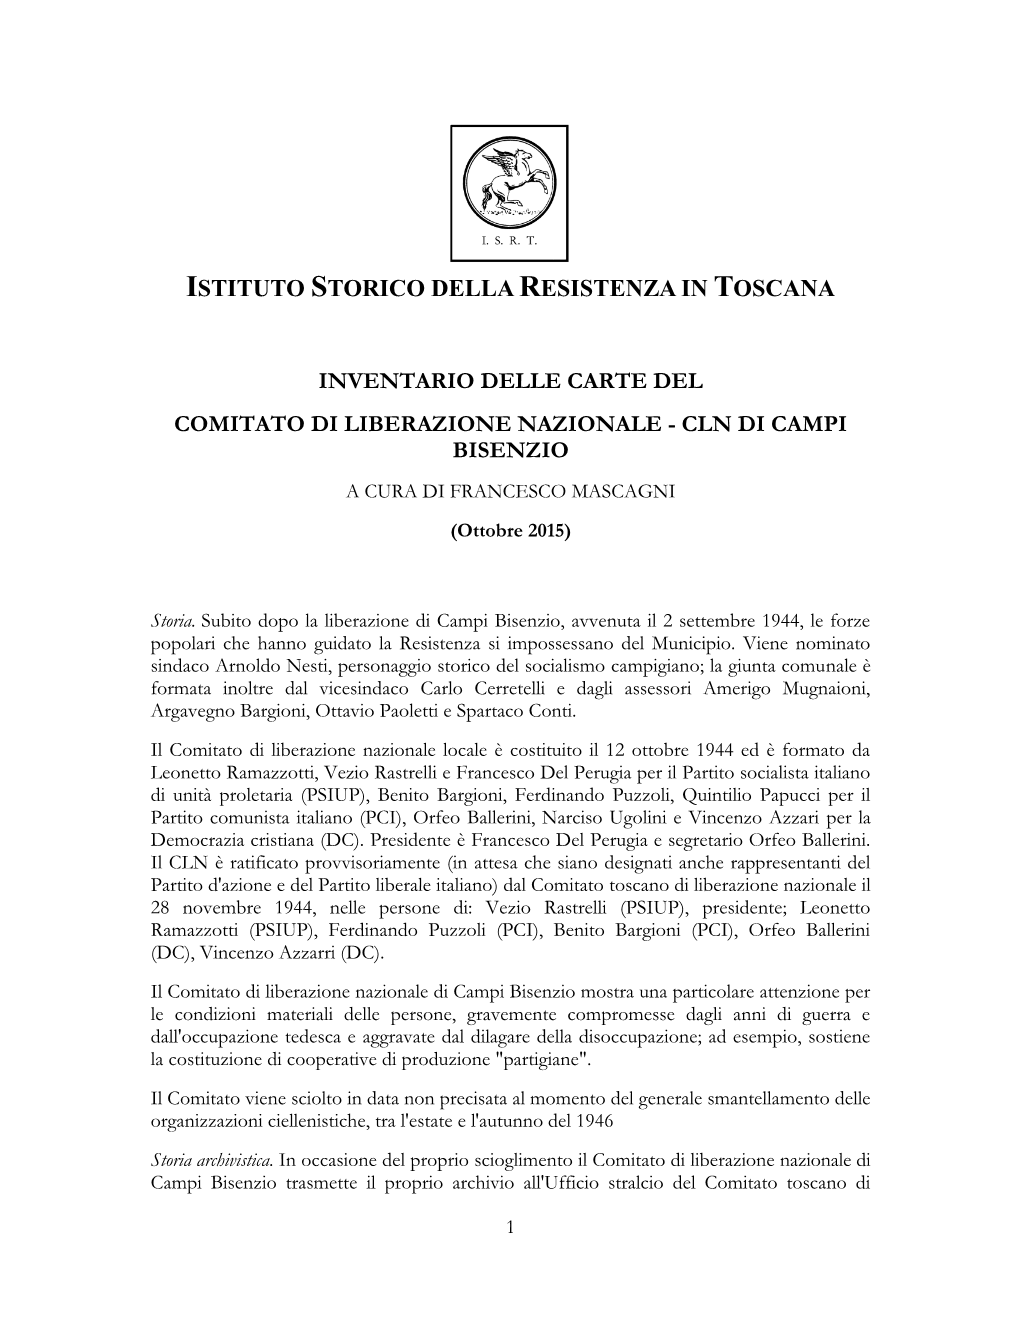 INVENTARIO DELLE CARTE DEL COMITATO DI LIBERAZIONE NAZIONALE - CLN DI CAMPI BISENZIO a CURA DI FRANCESCO MASCAGNI (Ottobre 2015)